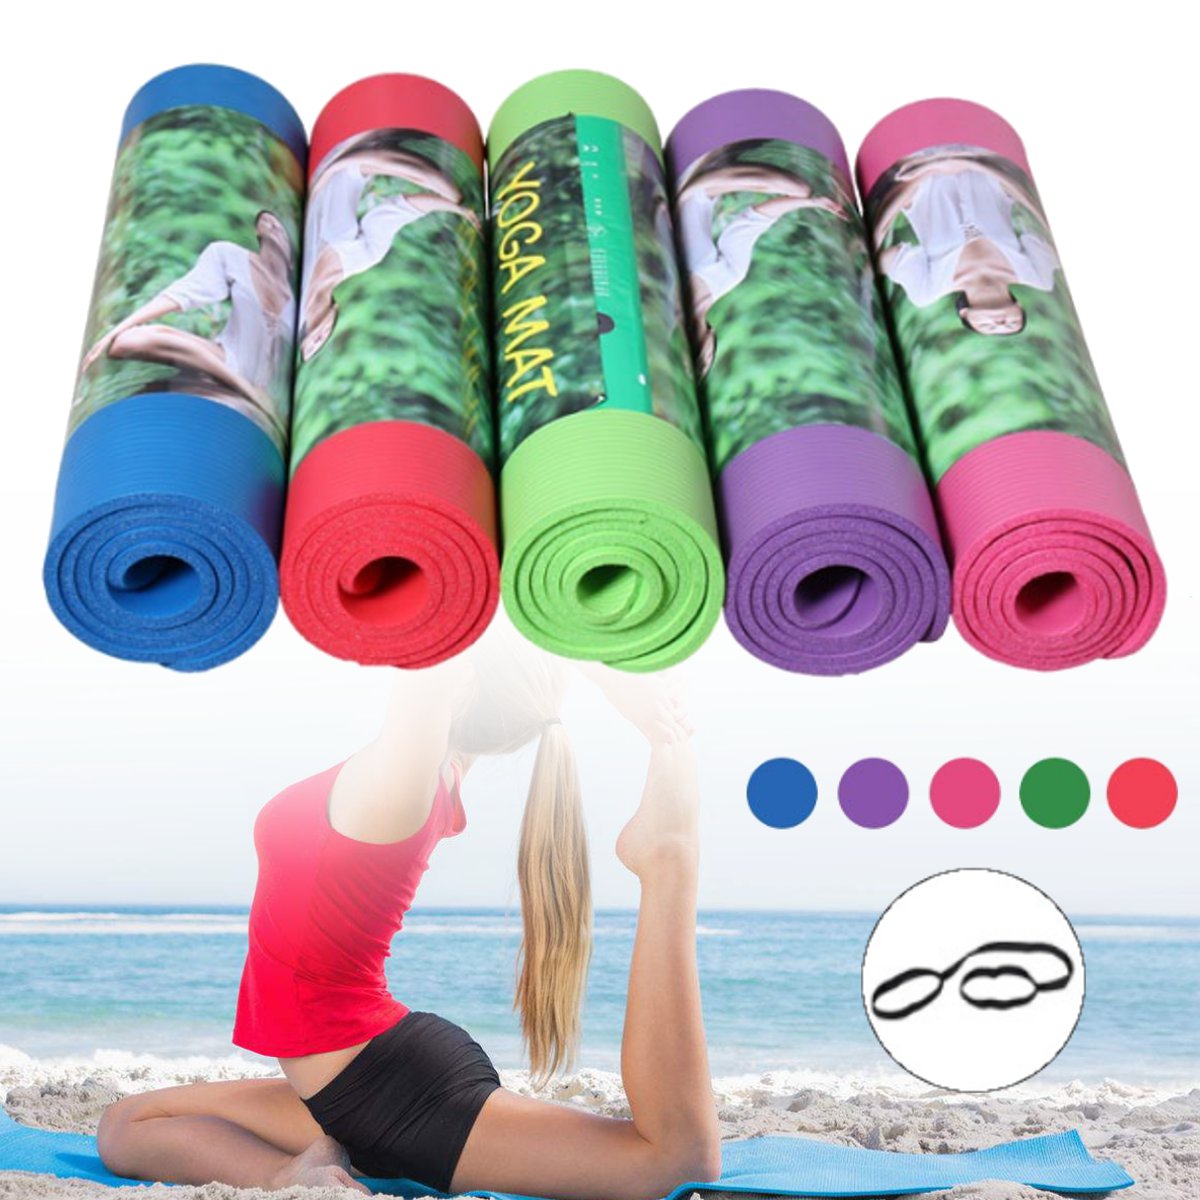 

KALOAD 15MM 180X60CM Yoga Коврик Экологичный Нескользящий Спортзал Упражнения для тренировок на подушках Фитнес Коврики